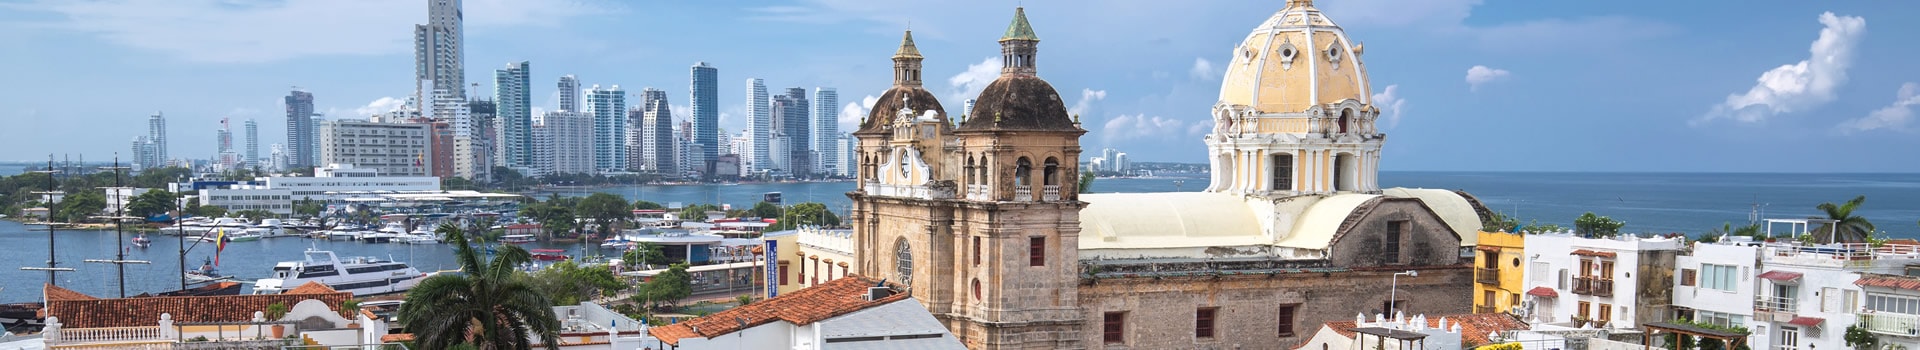 Sevilha - Cartagena das índias